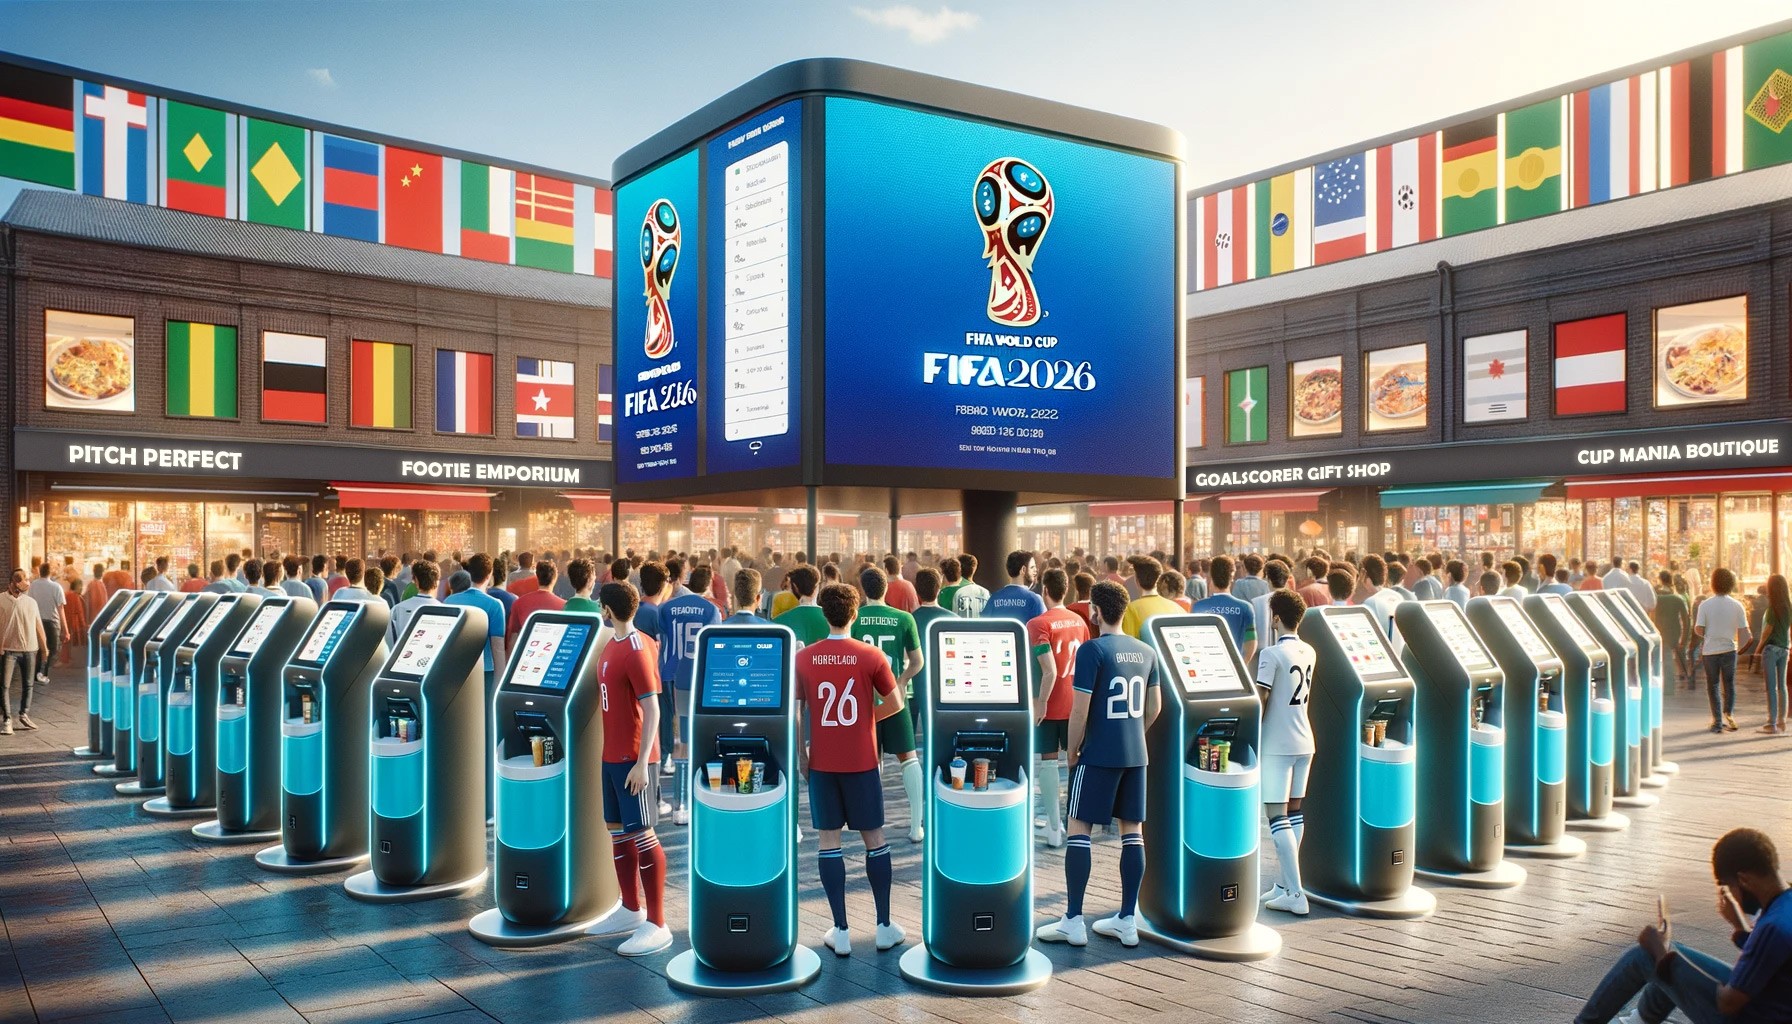 Triunfa con quioscos de pedidos y prepara tu negocio minorista para la Copa Mundial FIFA 2026